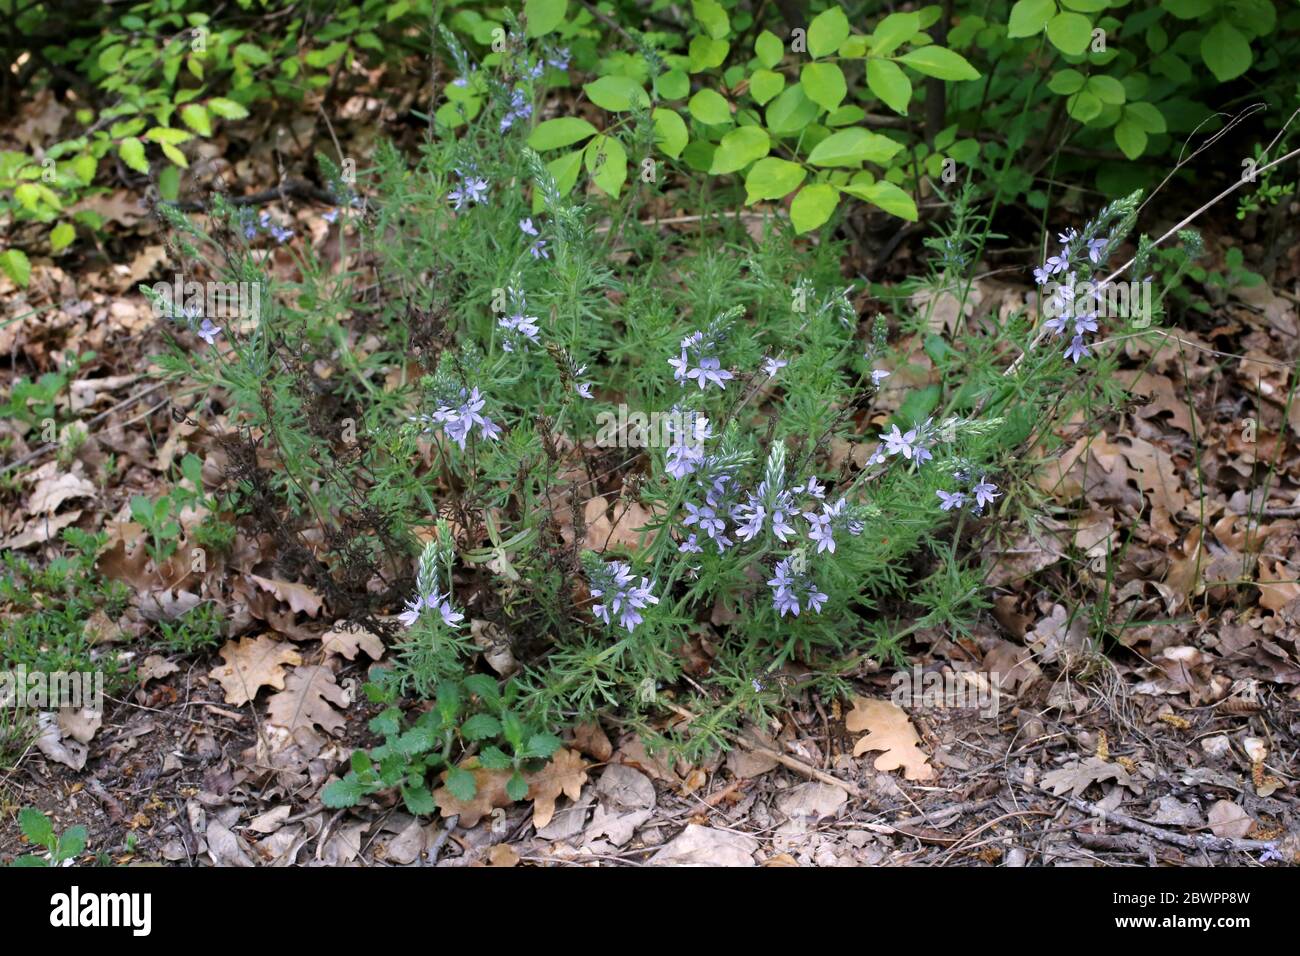 Veronica austriaca subsp. jacquini - Wild plant shot in the spring. Stock Photo